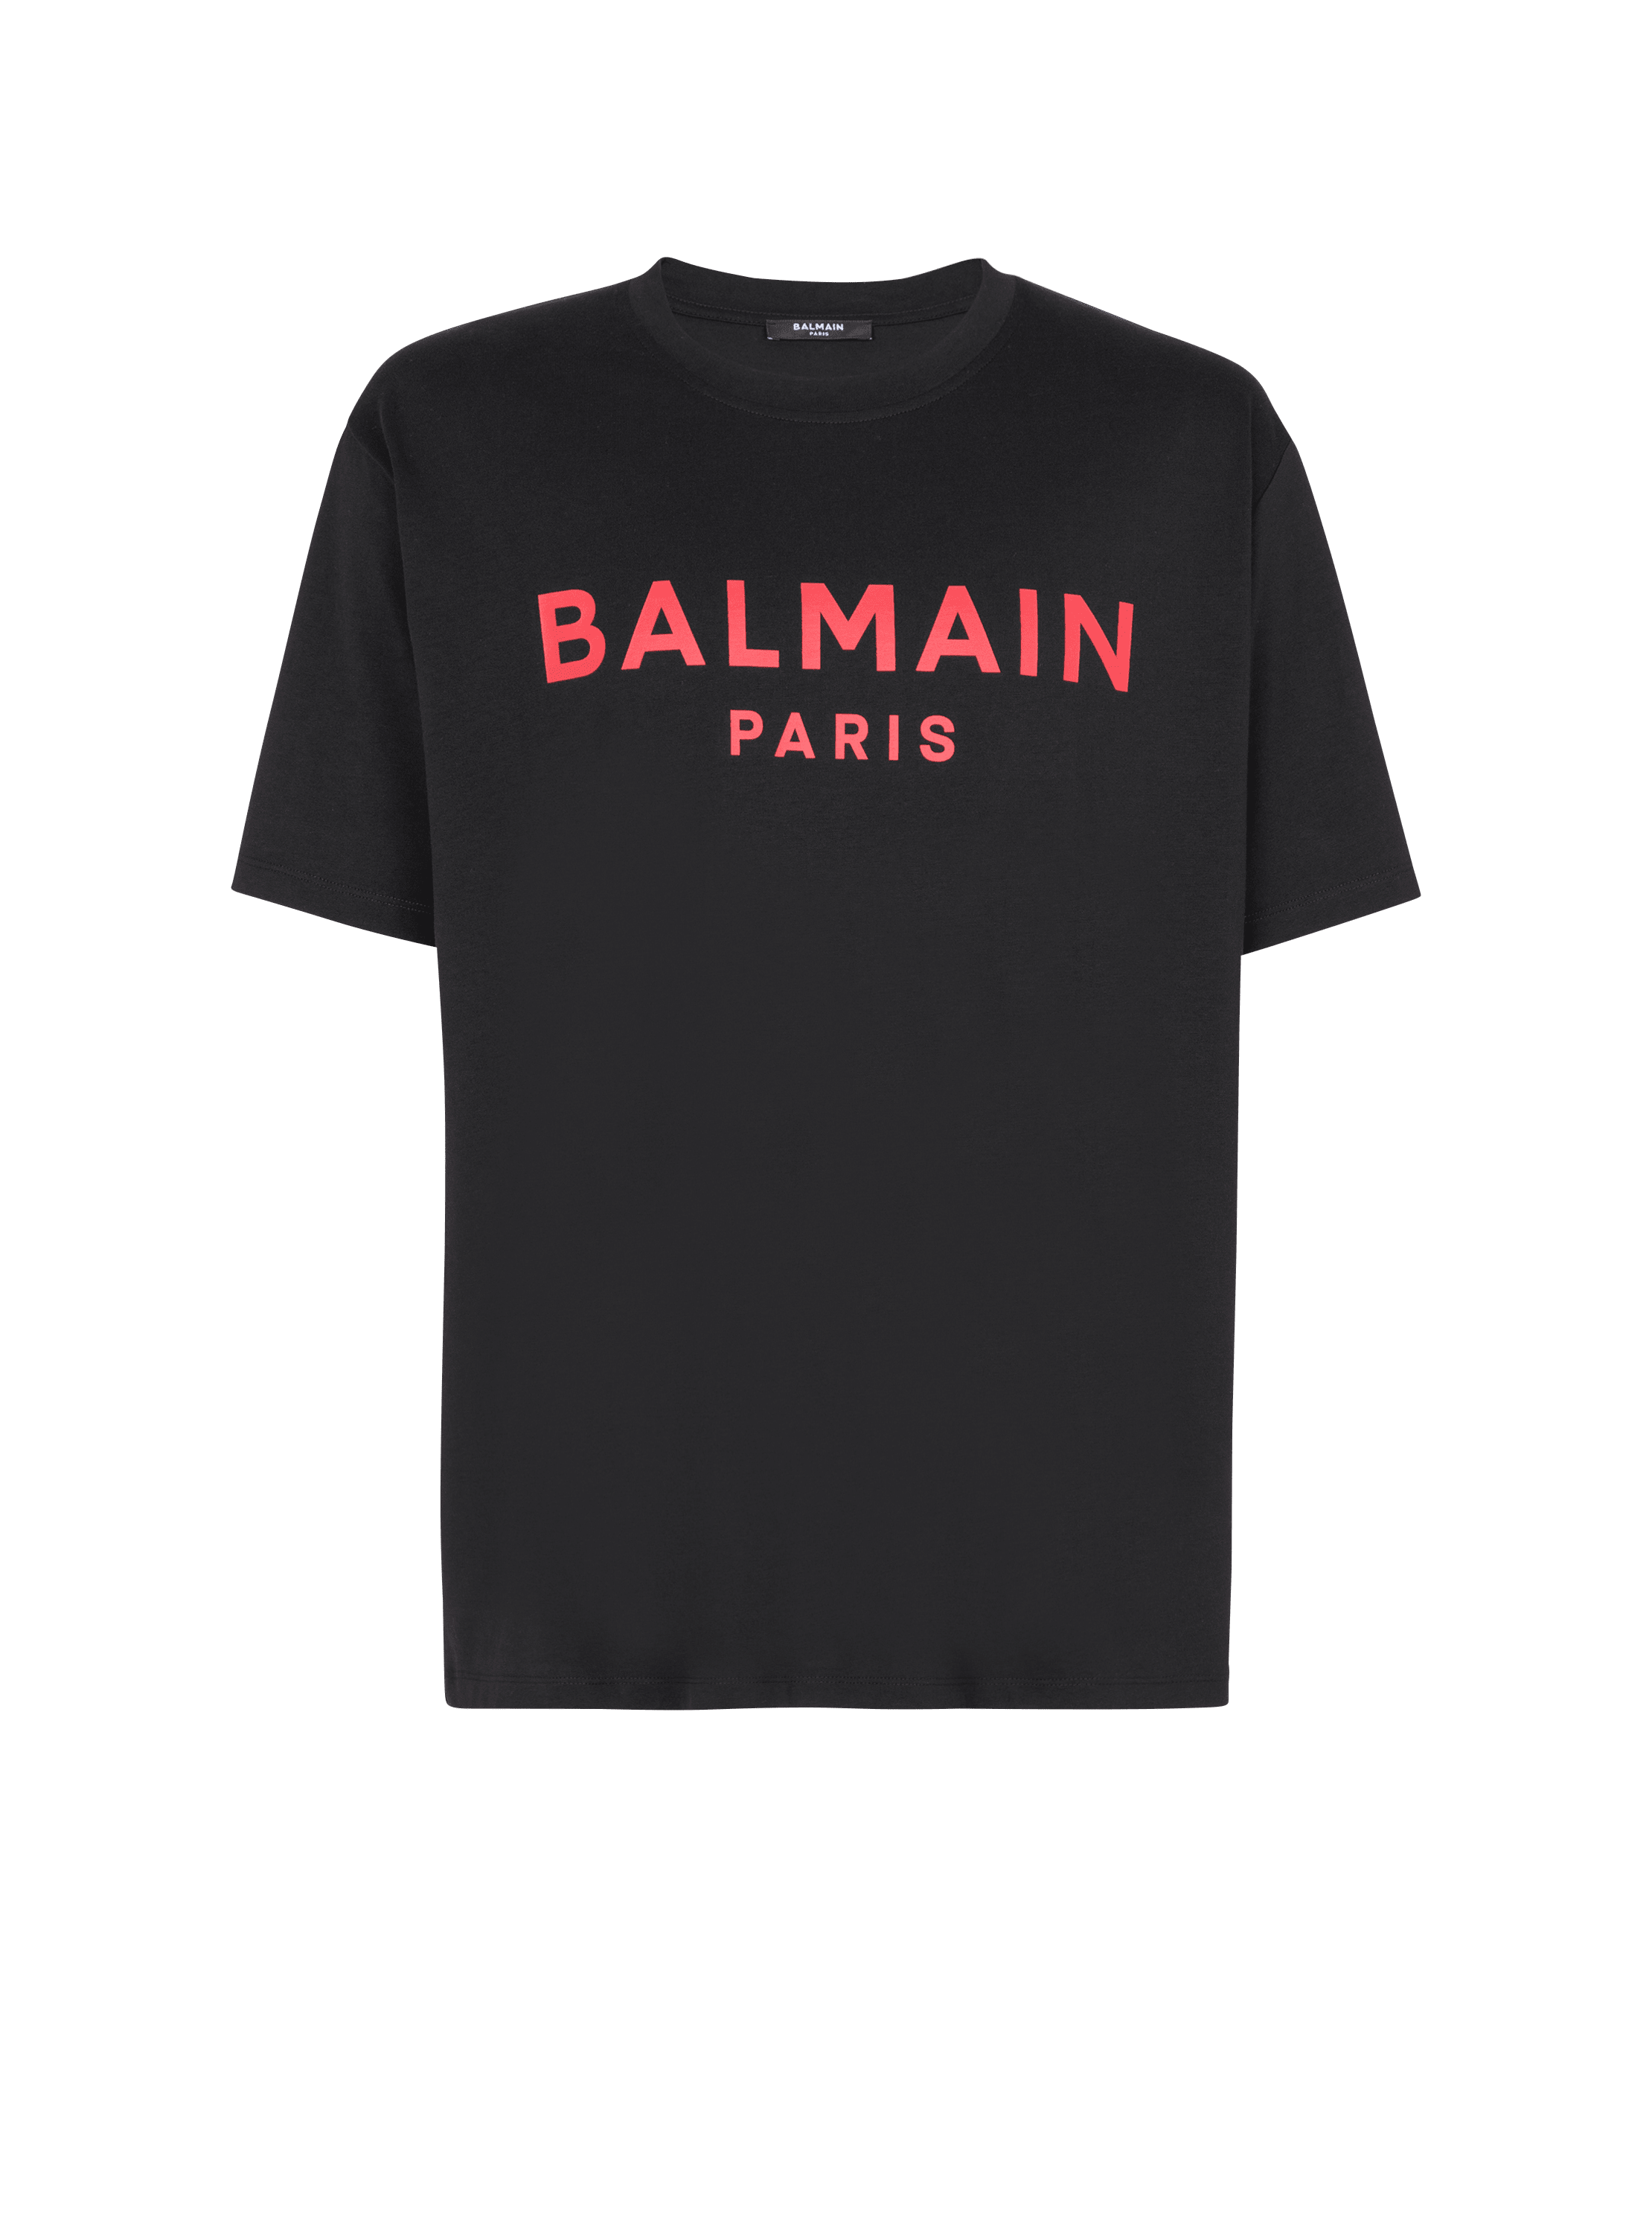 T-shirt imprimé Balmain Paris , noir, hi-res